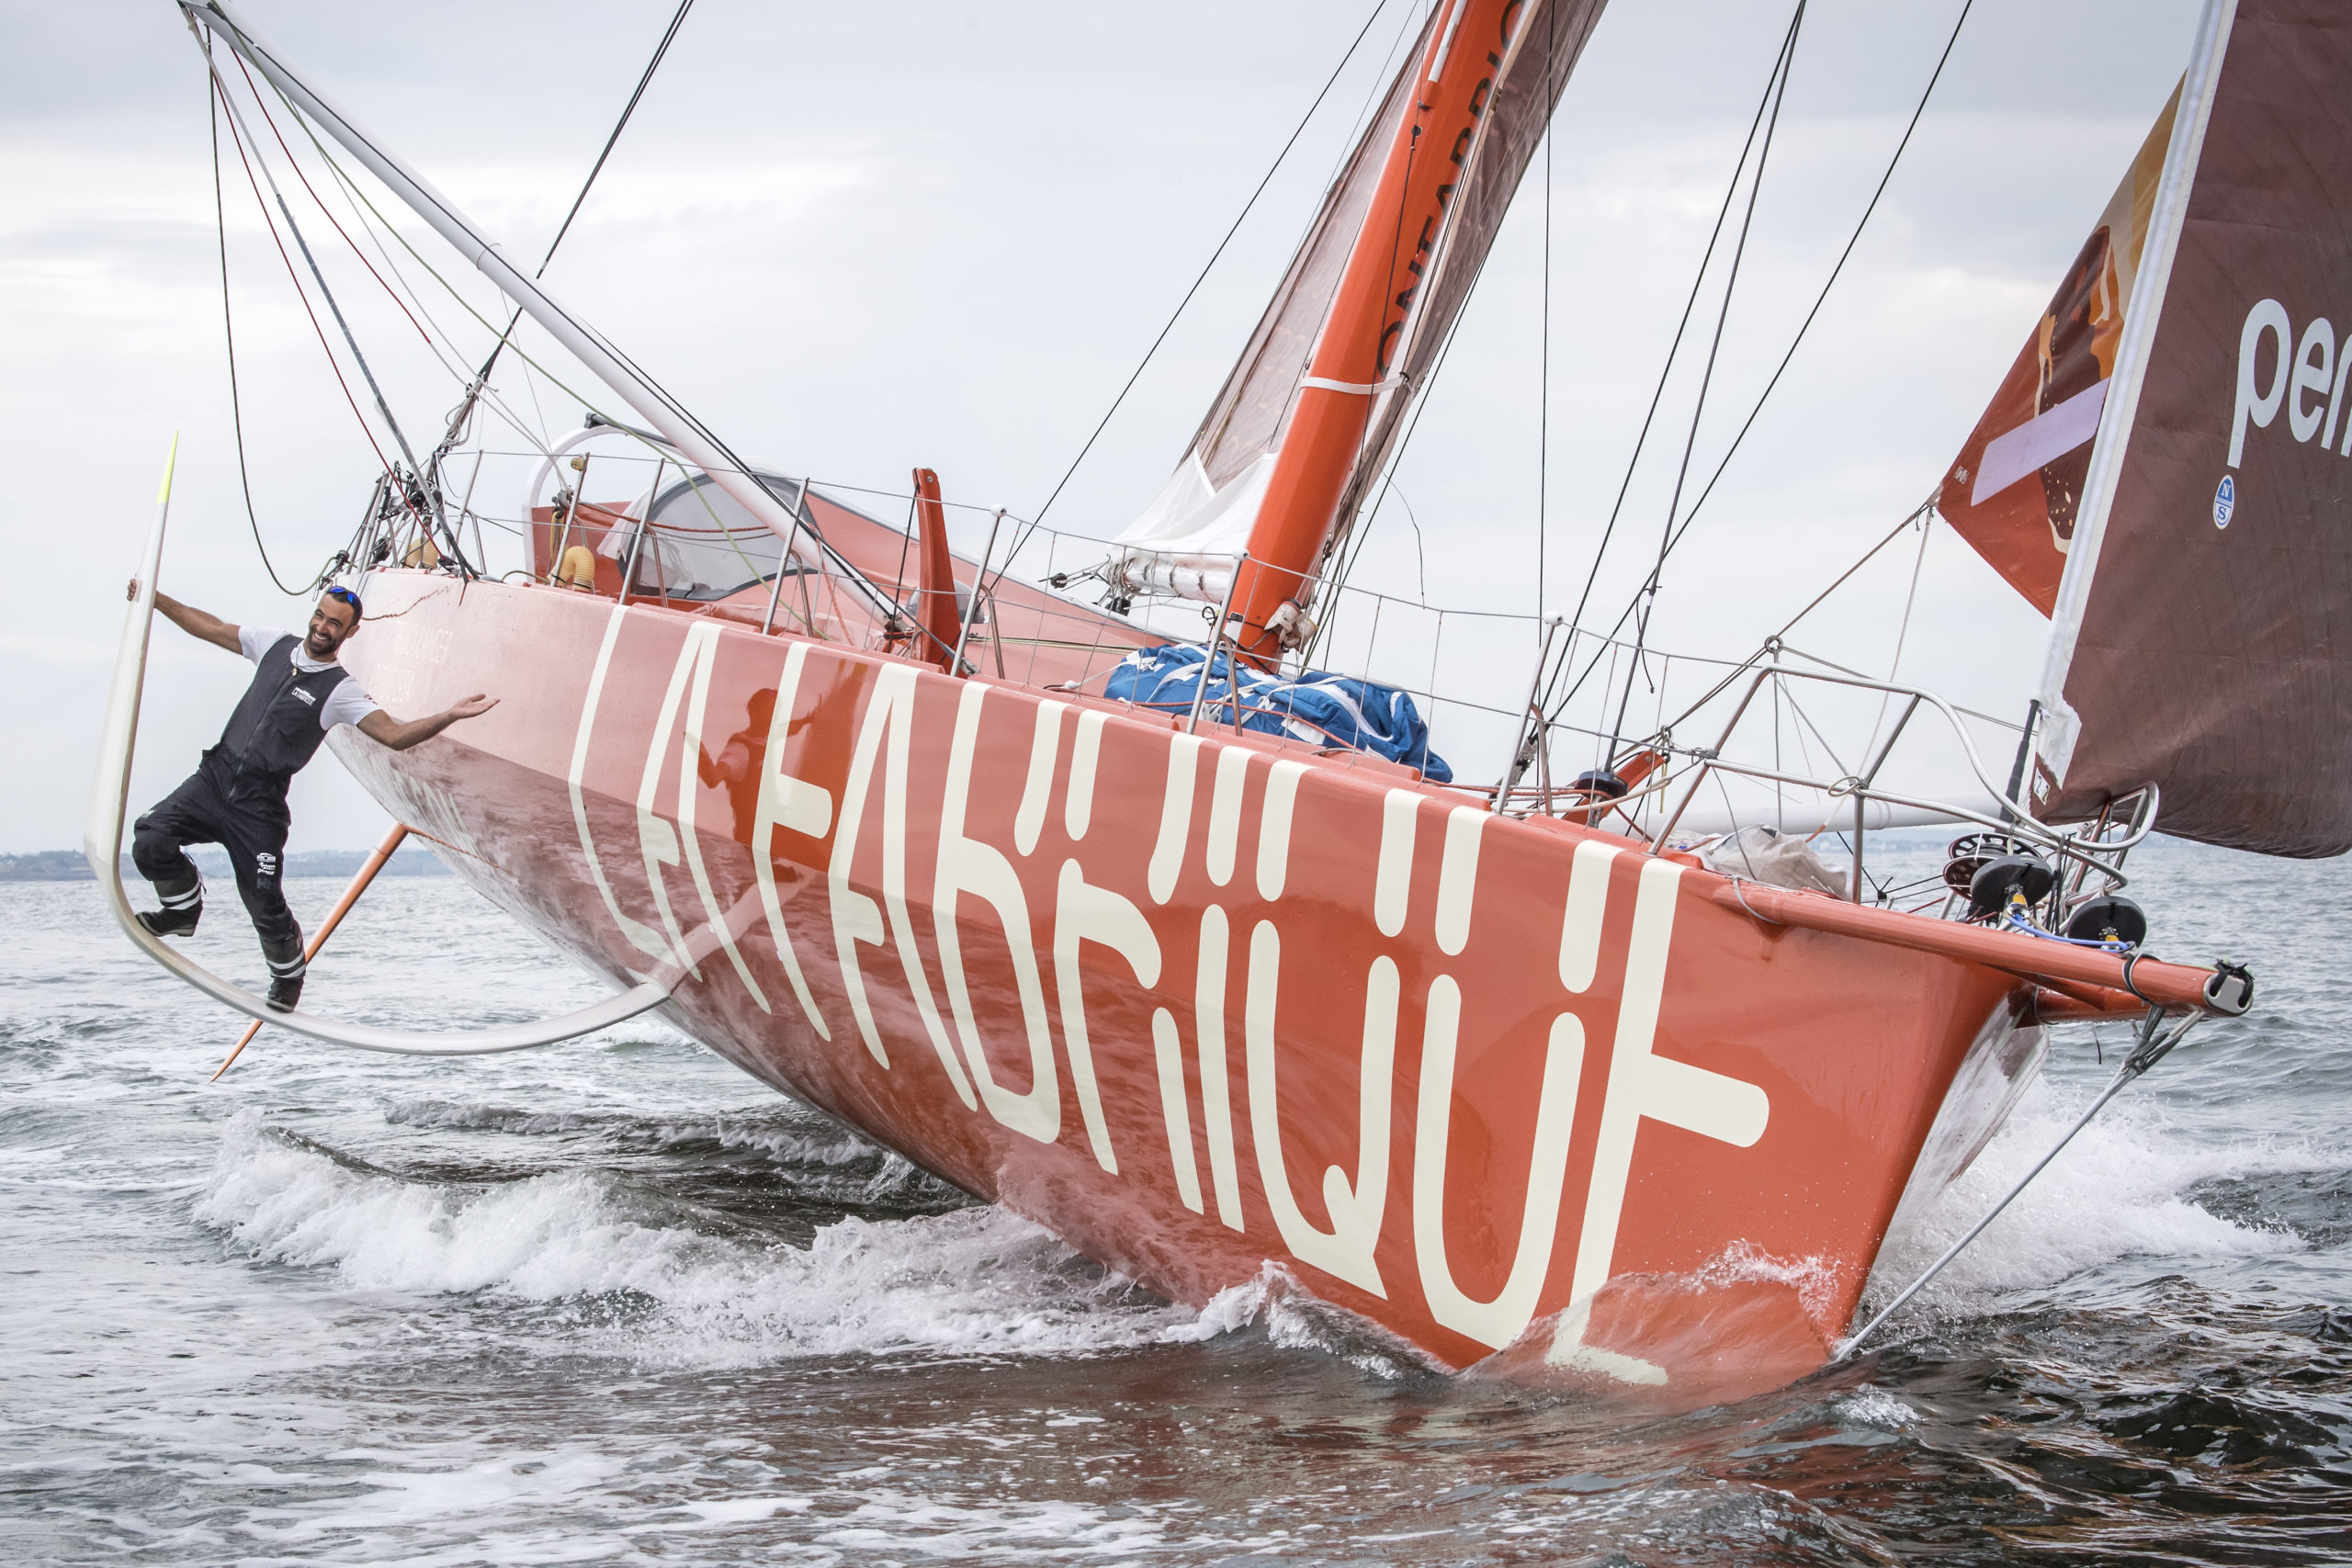 17.06.2020;  Lorient; VOILE - Alan Roura; Alan Roura (SUI) La Fabrique Sailing Team
s entraine pour le  Vendee Globe 2020 avec son bateau fraichement repeint
Jean-Guy Python